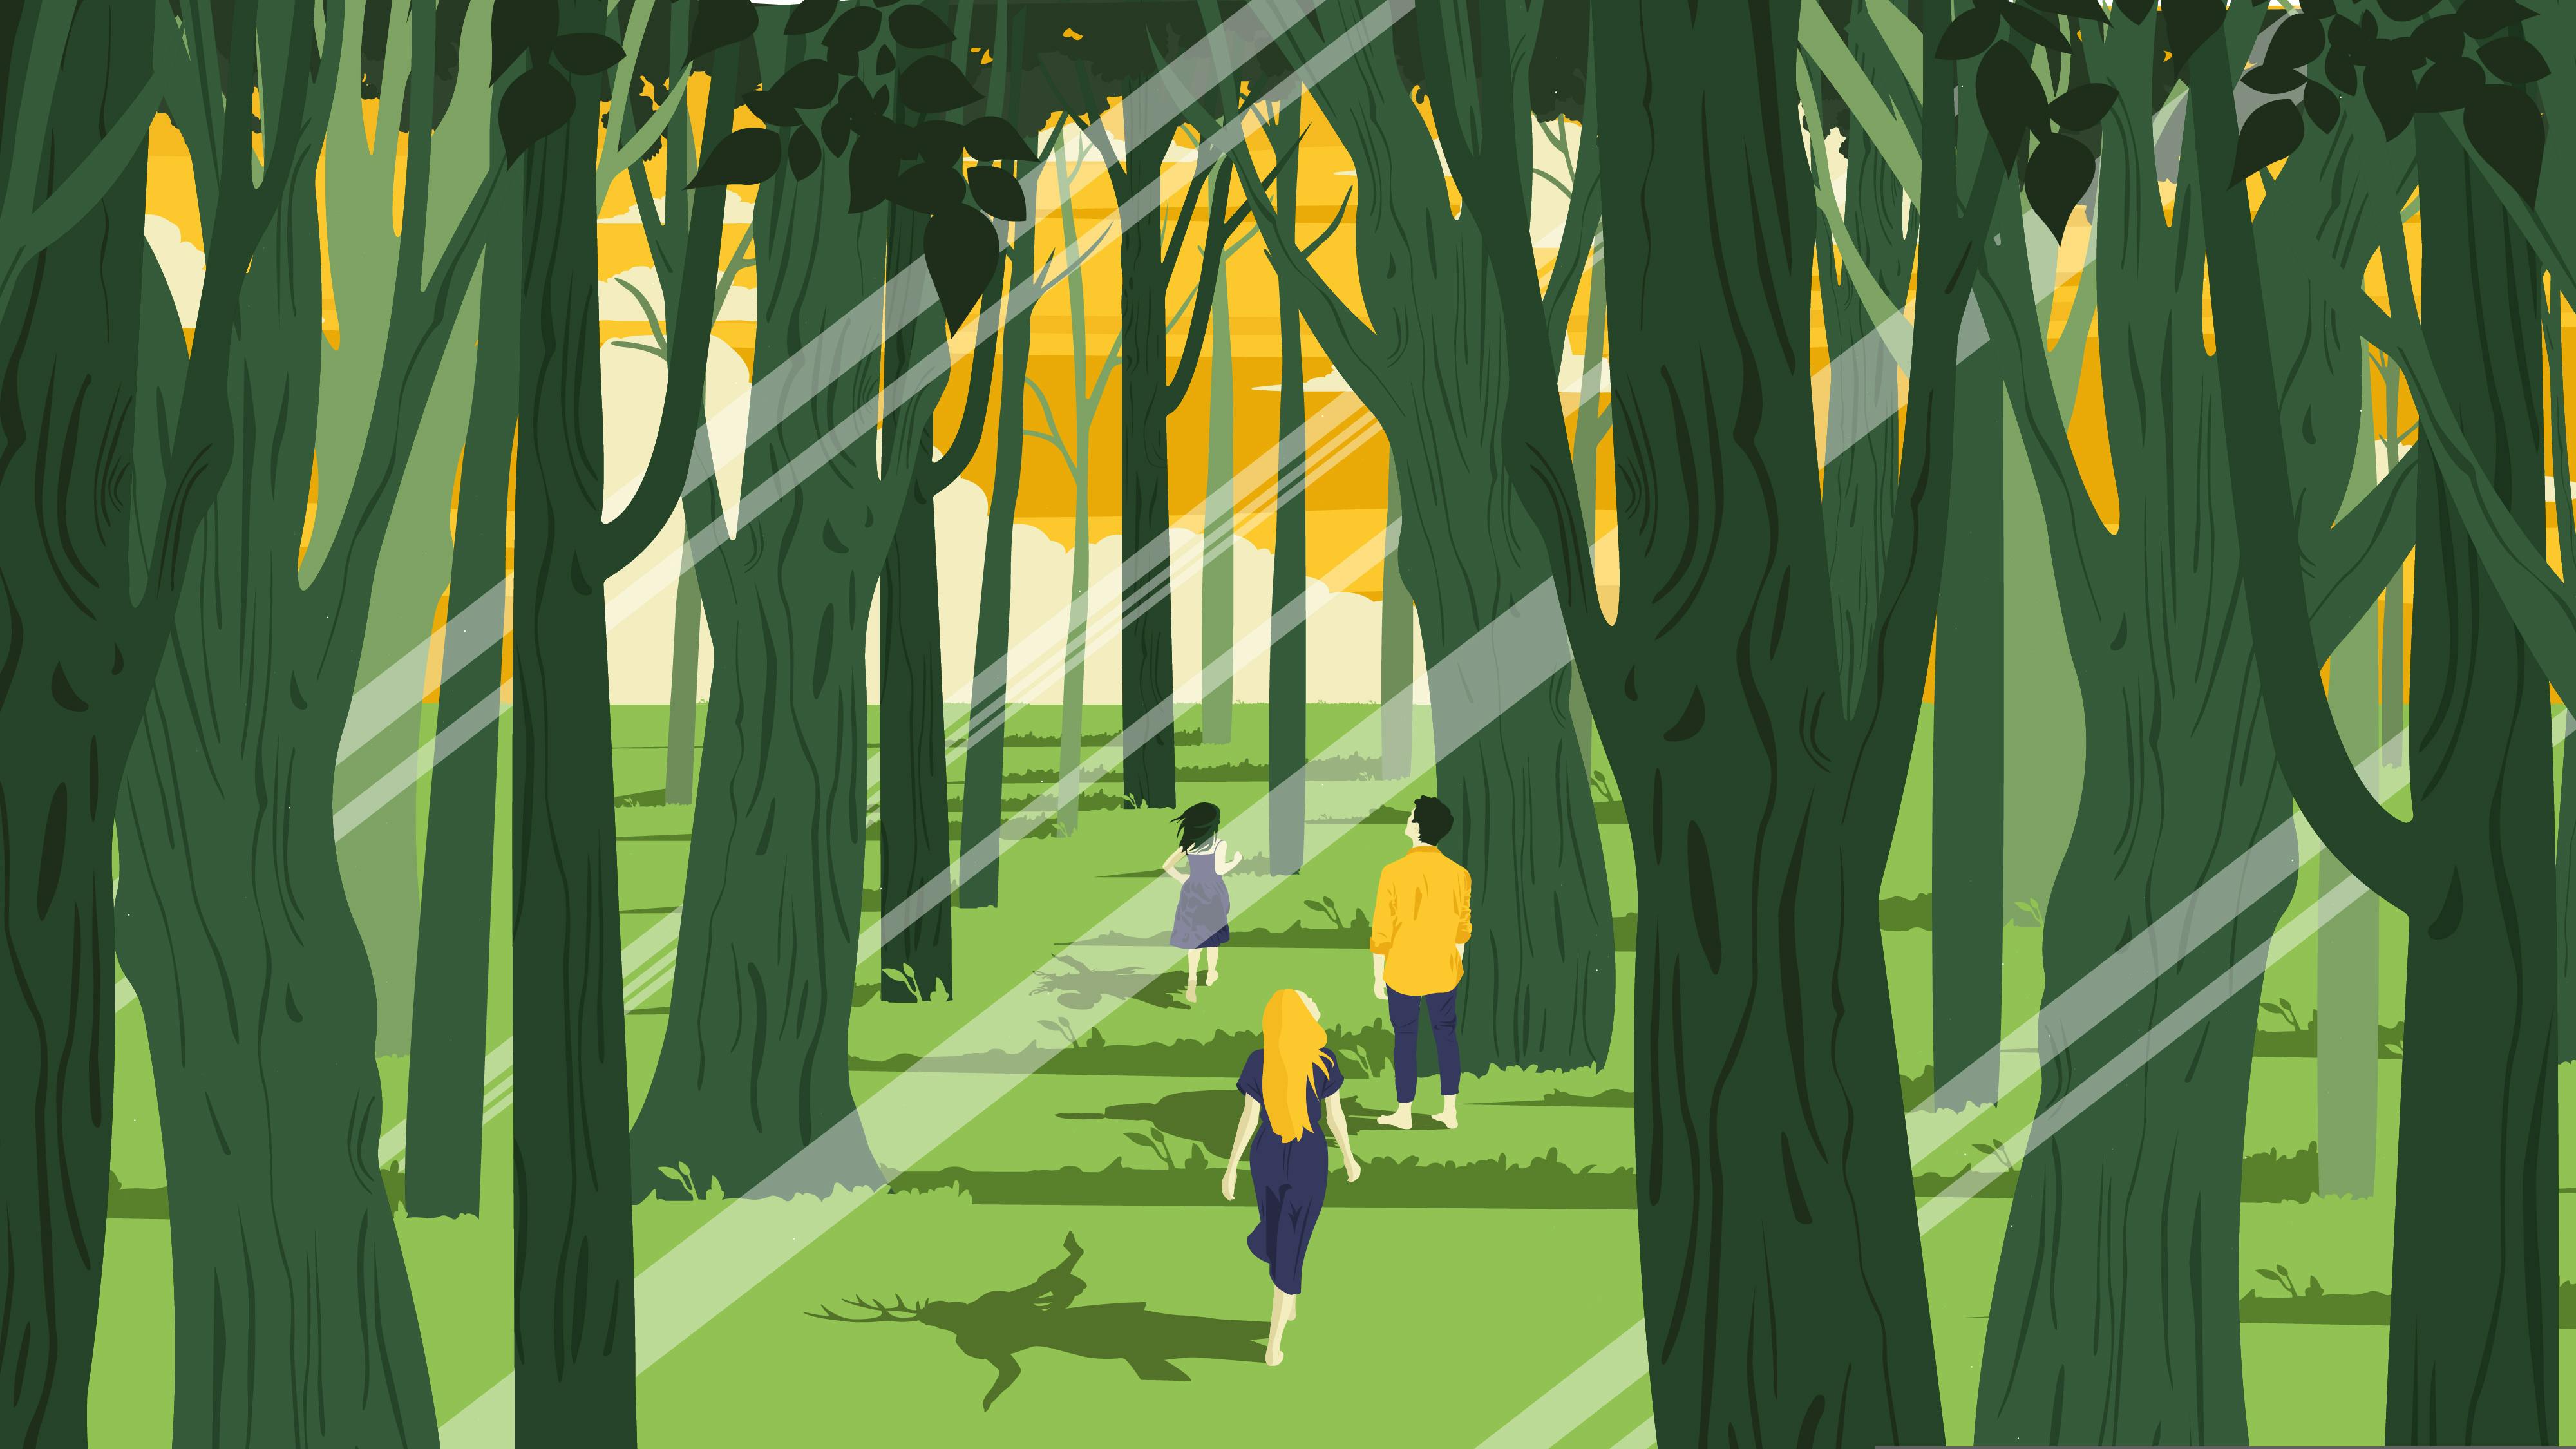 L'illustrazione mostra un bosco al tramonto. Tre ragazzi lo attraversano camminando; guardano verso l'orizzonte, li vediamo di schiena. Le ombre che proiettano sul terreno mostrano esseri incantati, a metà tra rito e magia.